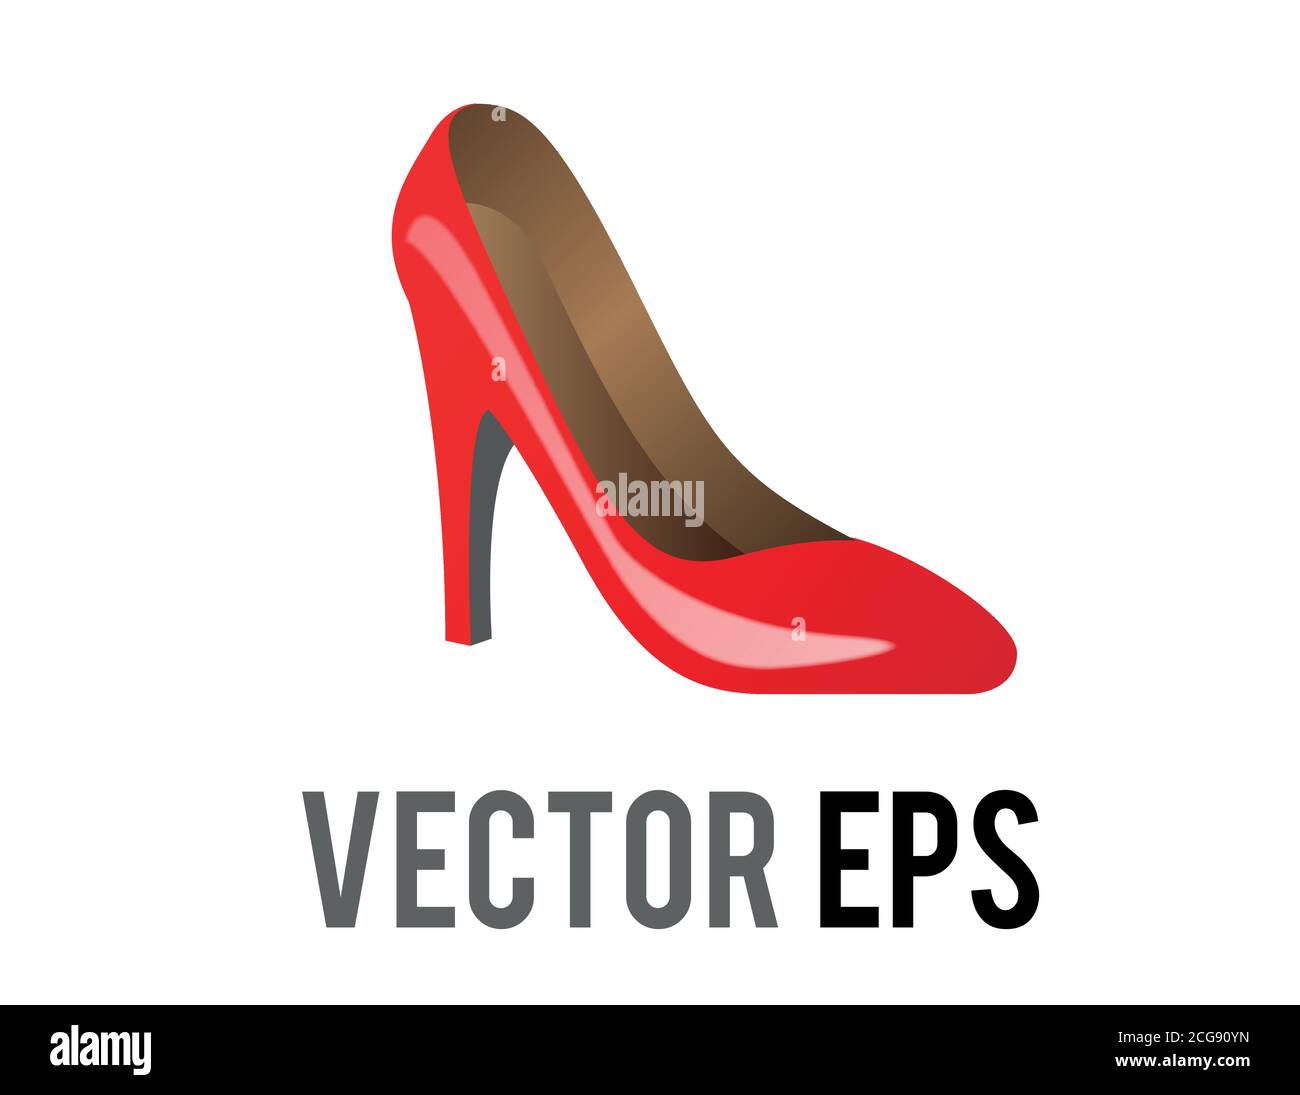 Le vecteur rouge isolé forme une icône en forme de chaussure à talons hauts pour les occasions sociales, les événements ou les lieux de travail Illustration de Vecteur